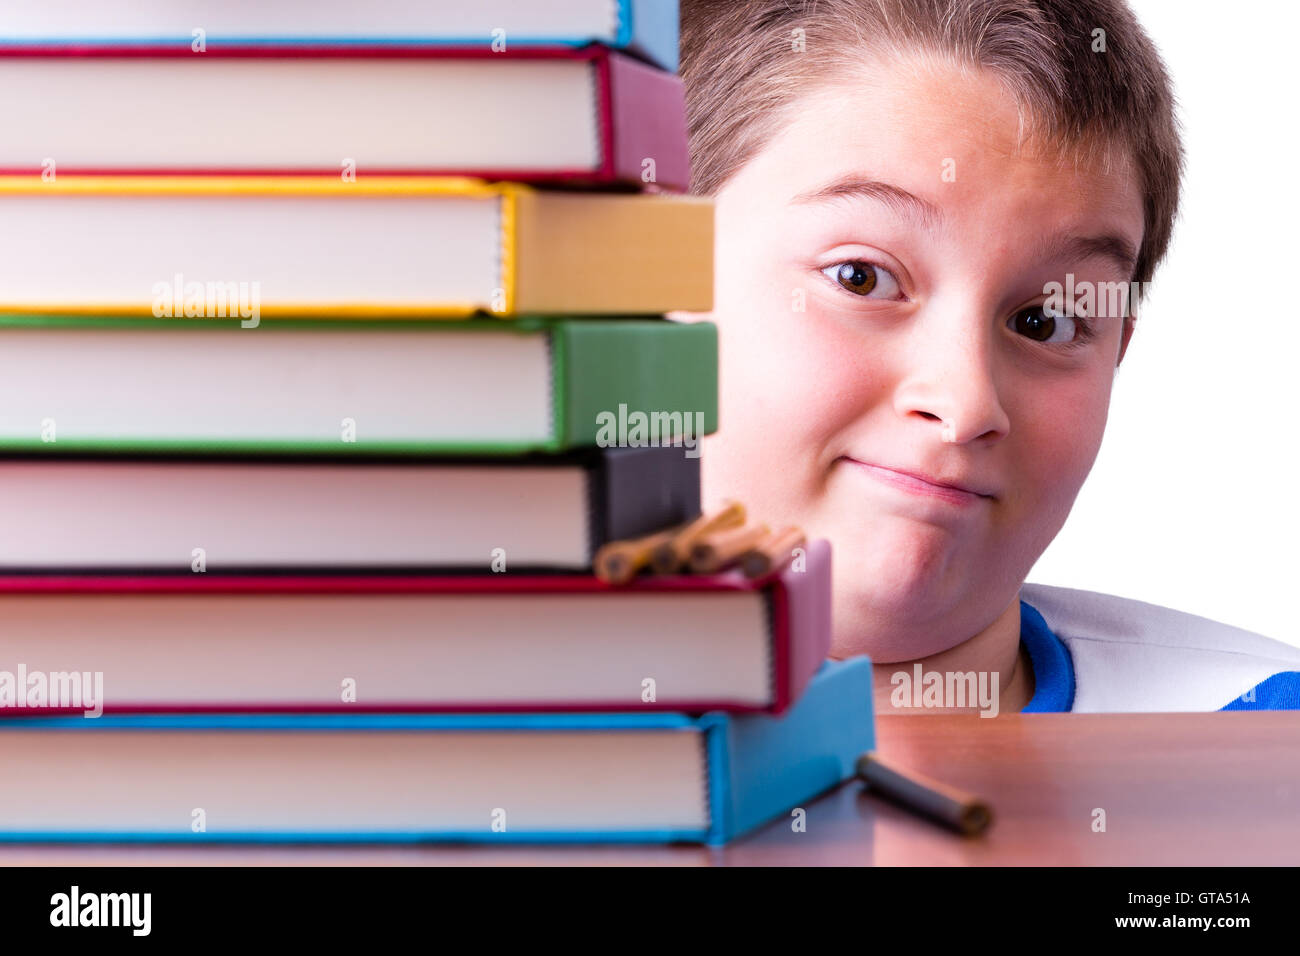 Vorsichtig optimistisch junge Schüler, die einen hohen Stapel von bunten Hardcover Bücher mit einem skurrilen mit weit aufgerissenen Augen Expressio betrachtete Stockfoto